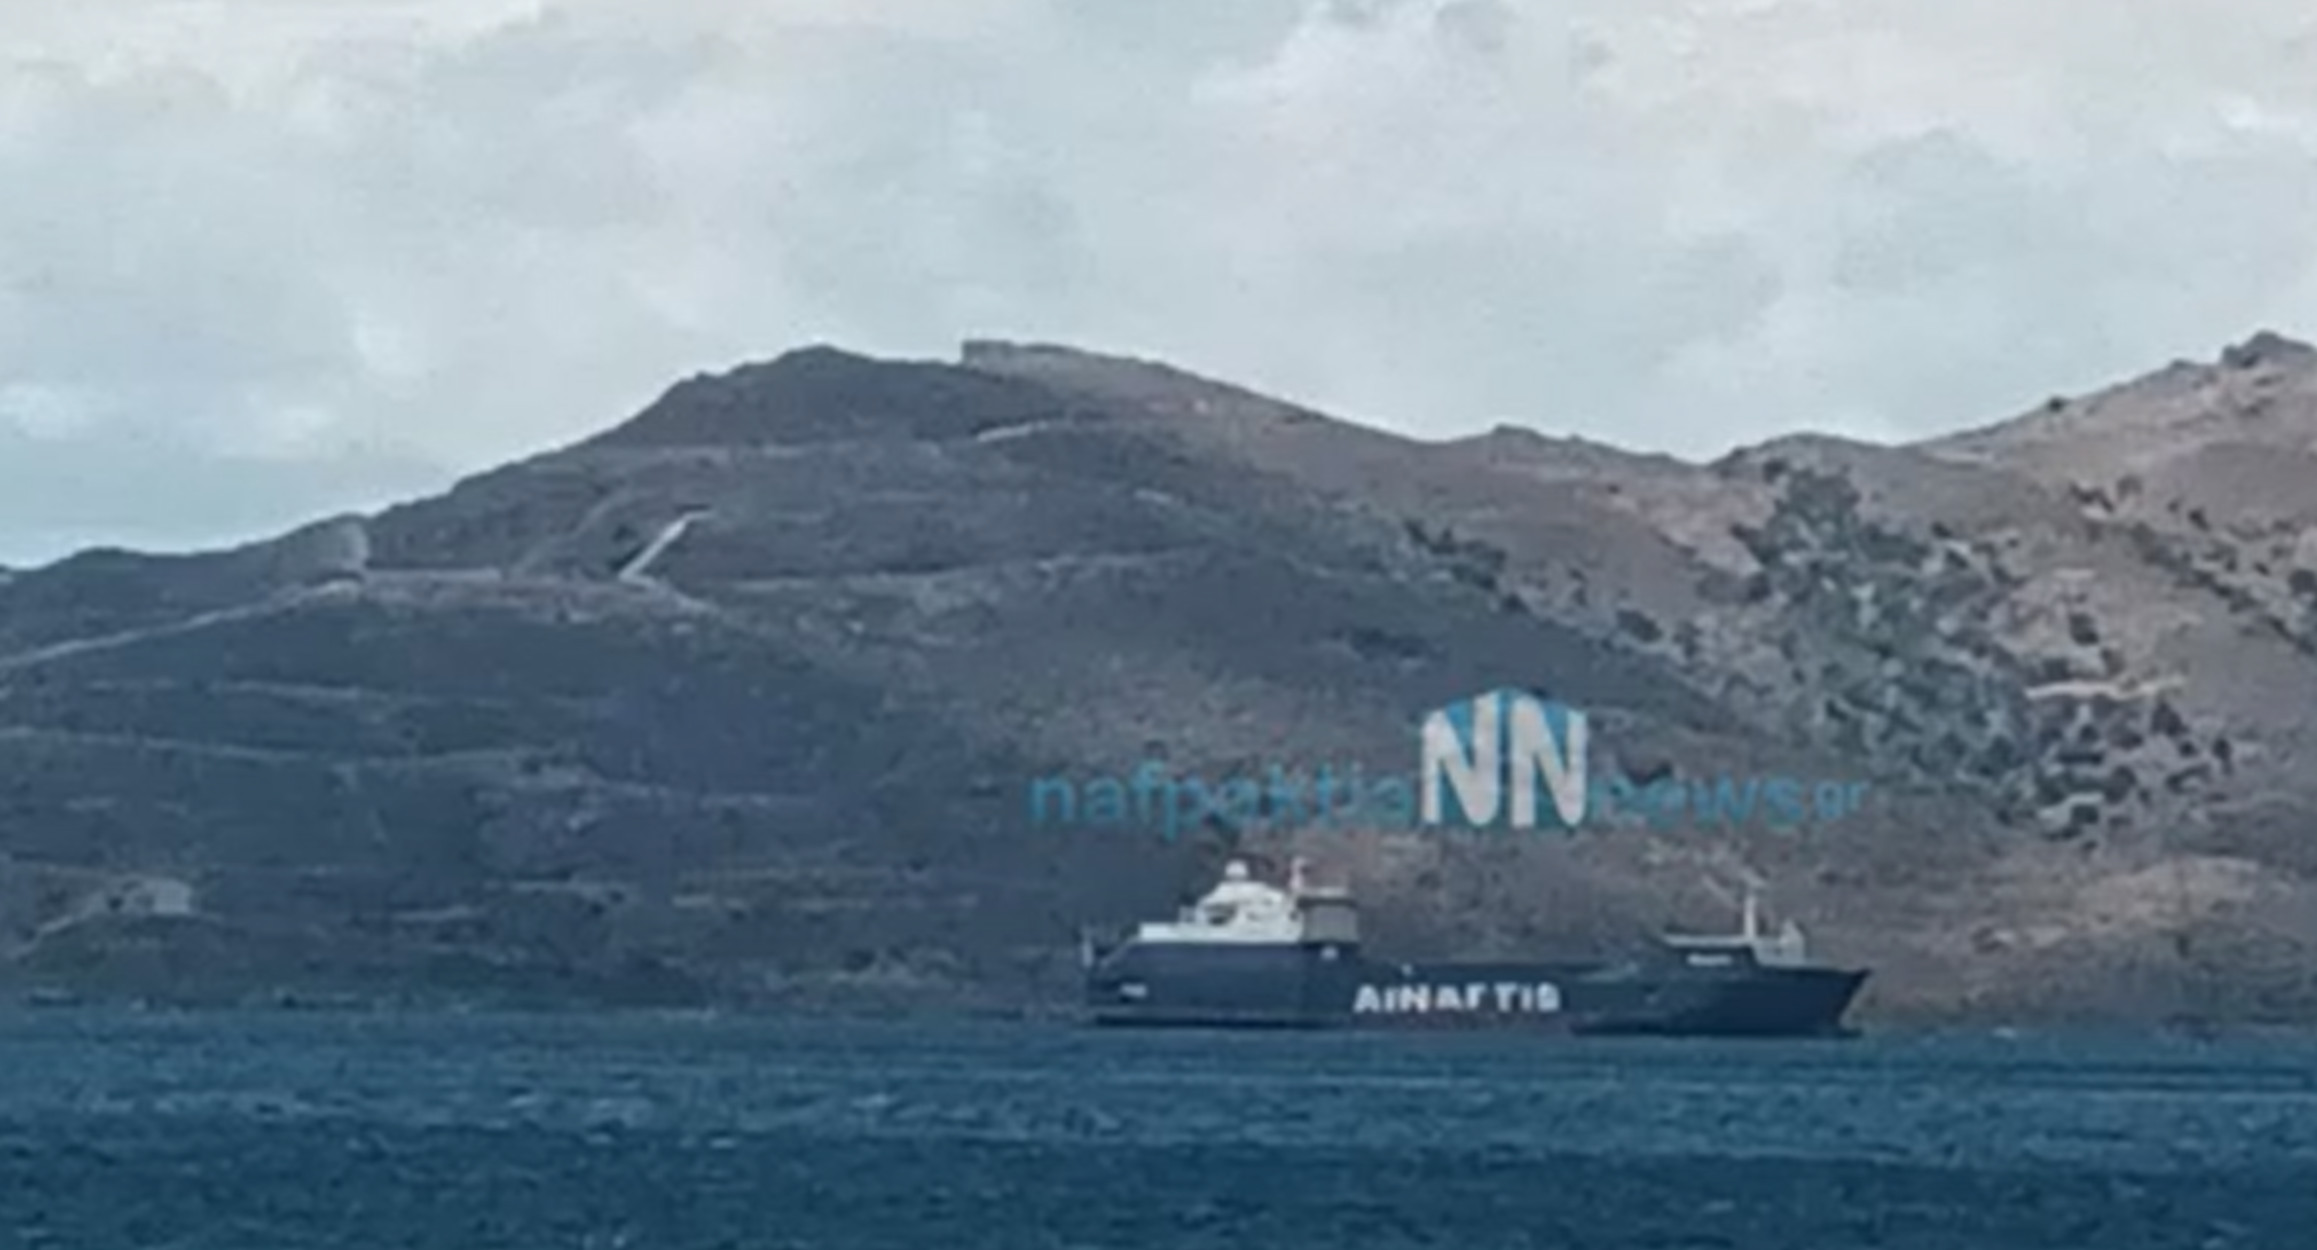 Κάβο Ντόρο: Σύγκρουση πλοίων στο Στενό Καφηρέα – Τα πρώτα στοιχεία για το ναυτικό ατύχημα